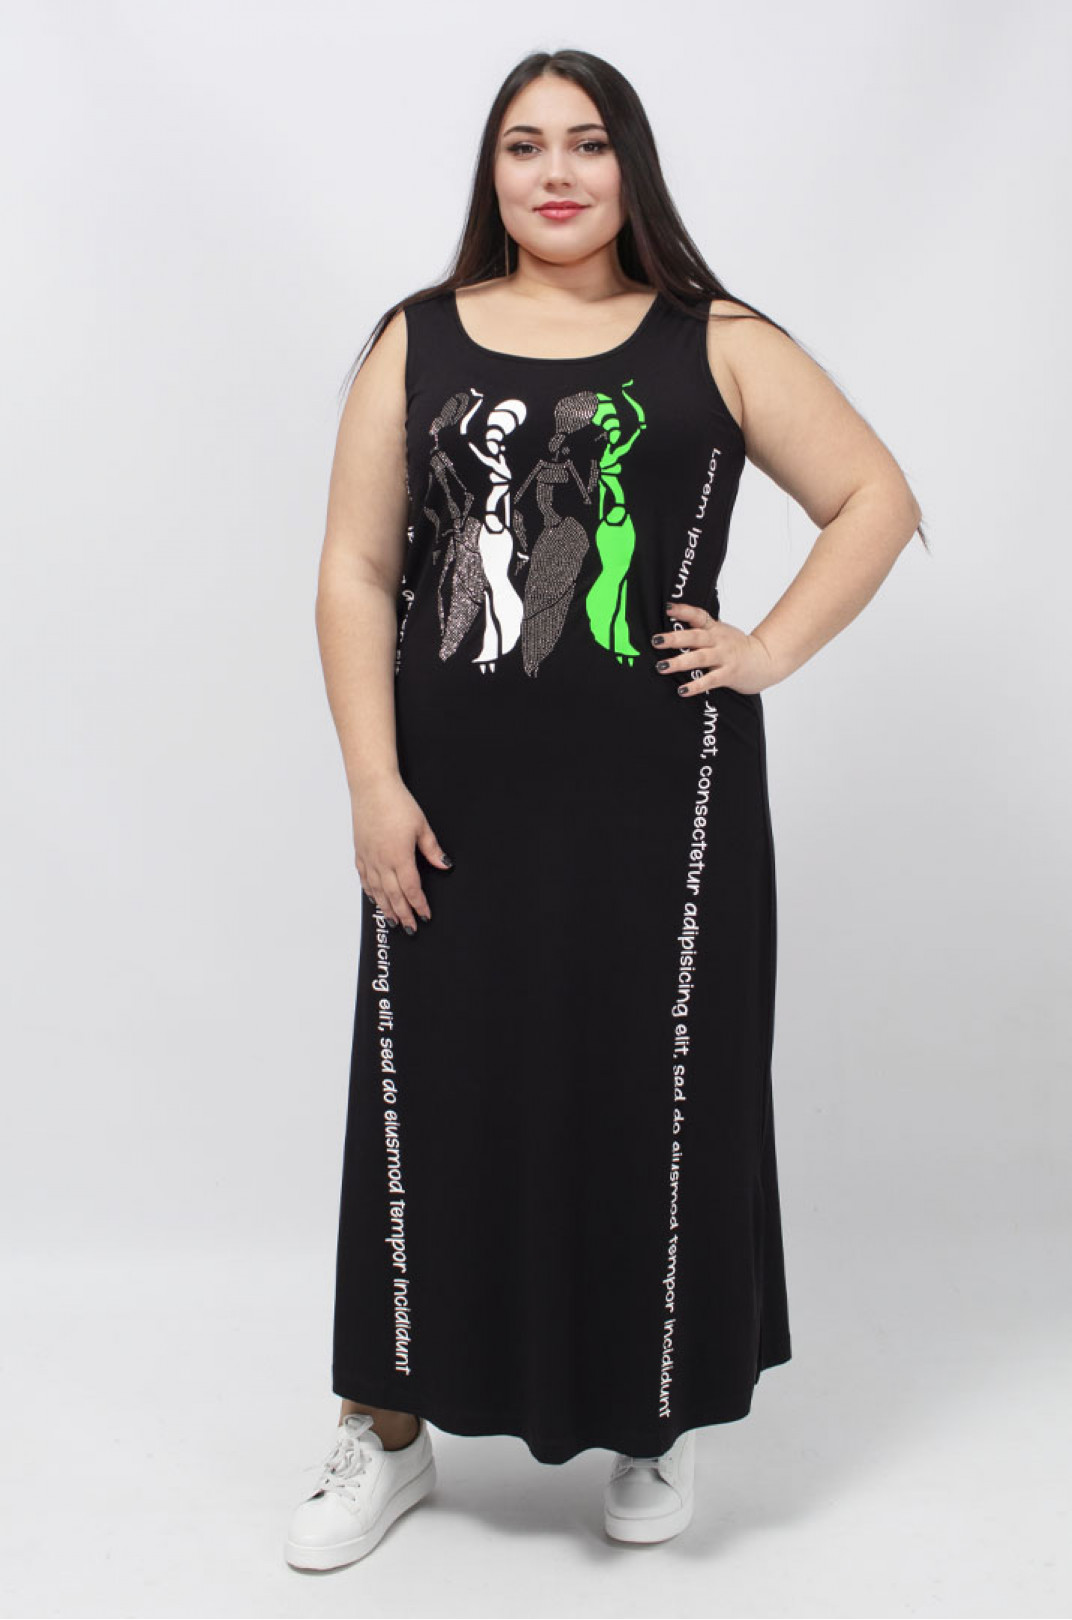 Сарафан-платье с вертикальными надписями, стразами и разрезами батал